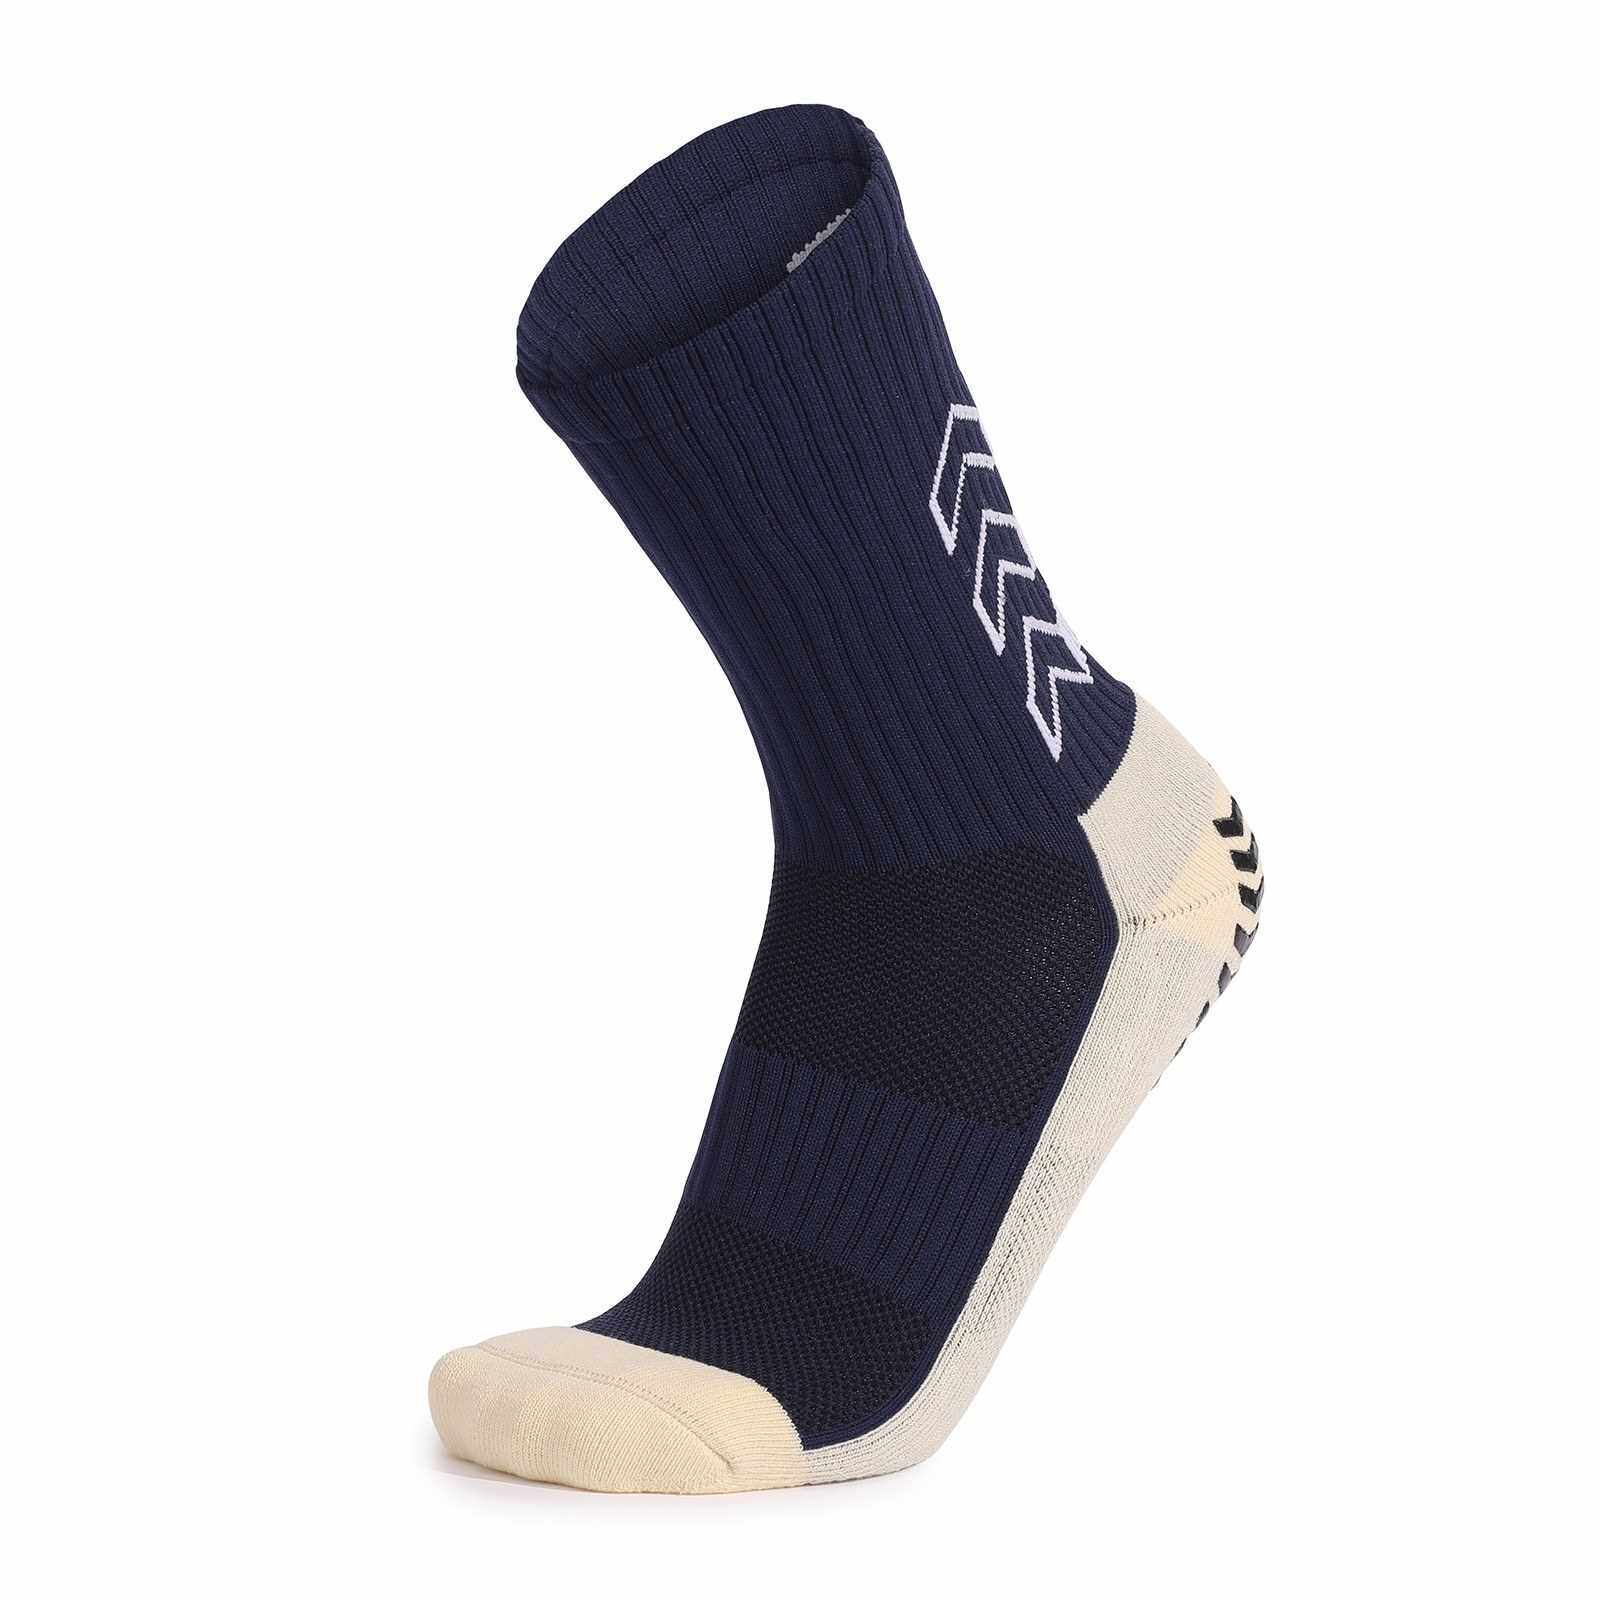 BEST SELLER Sport Cushioned Socks Non Slip Grip for Basketball Soccer Ski Cycling Athletic Socks (Dark Blue)